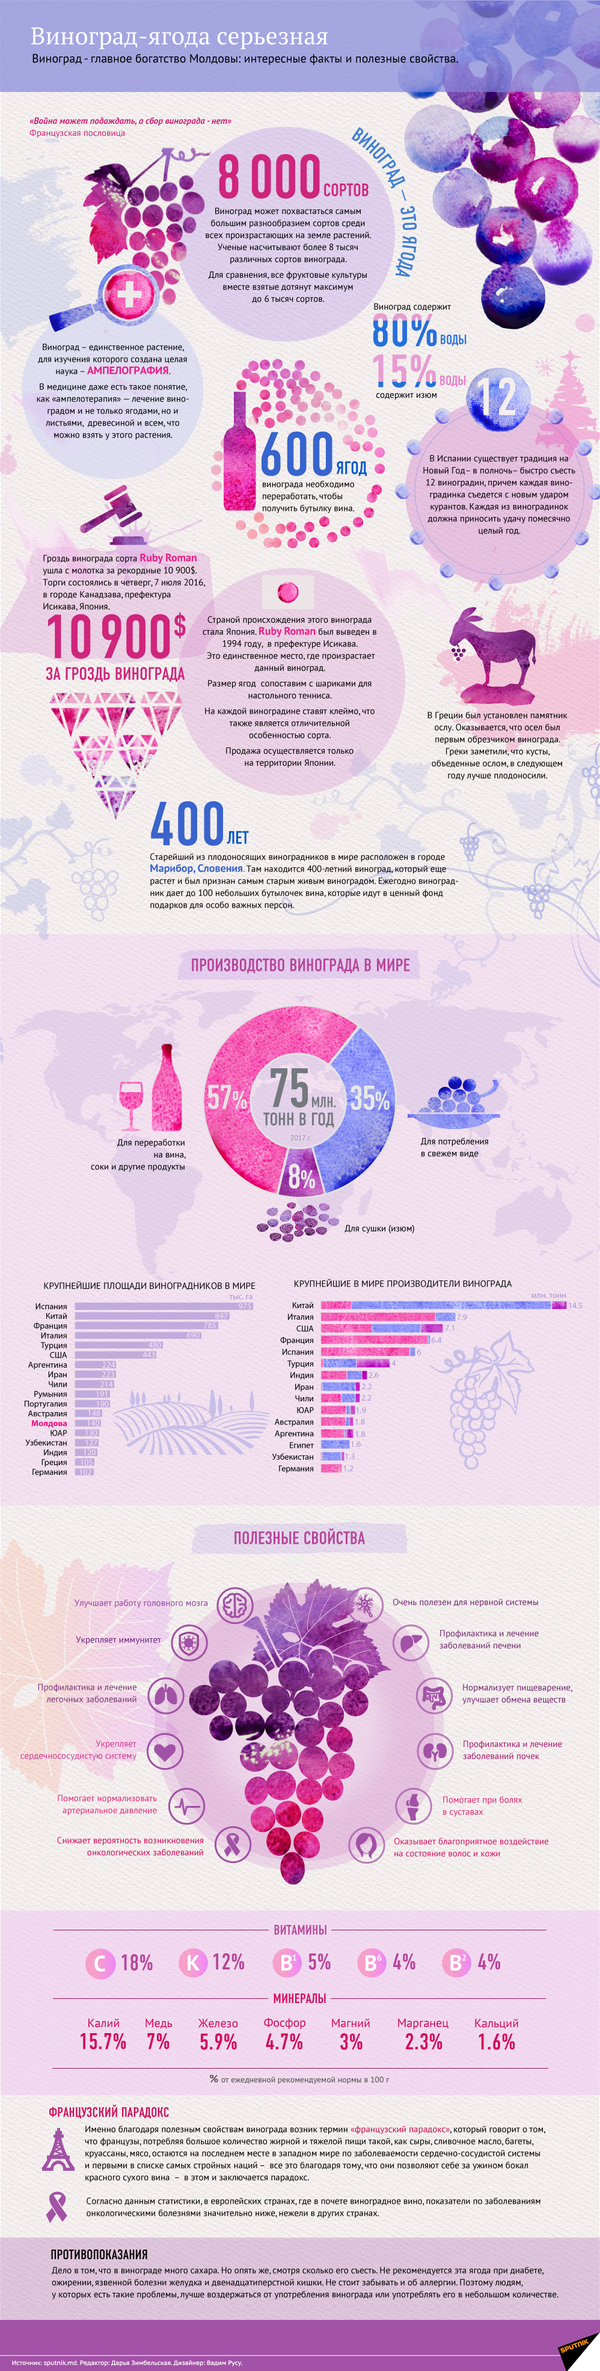 Польза и вред винограда – инфографика на sputnik.by - Sputnik Абхазия